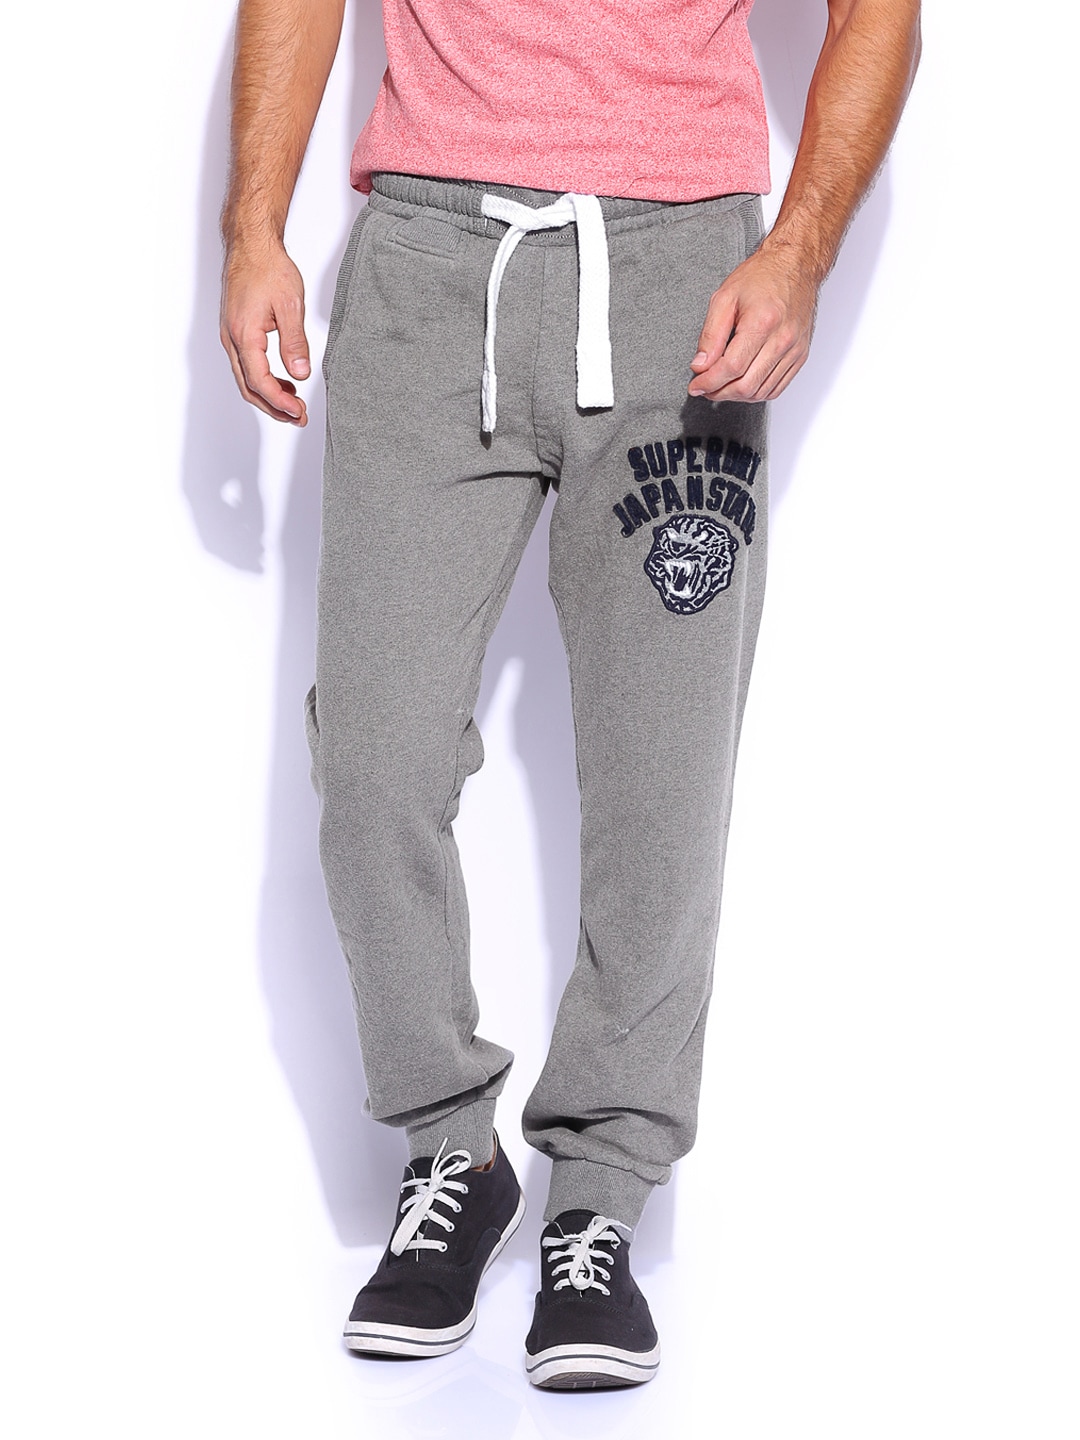 Buy Superdry Men Grey Track Pants - 293 - Apparel for Men - 498091